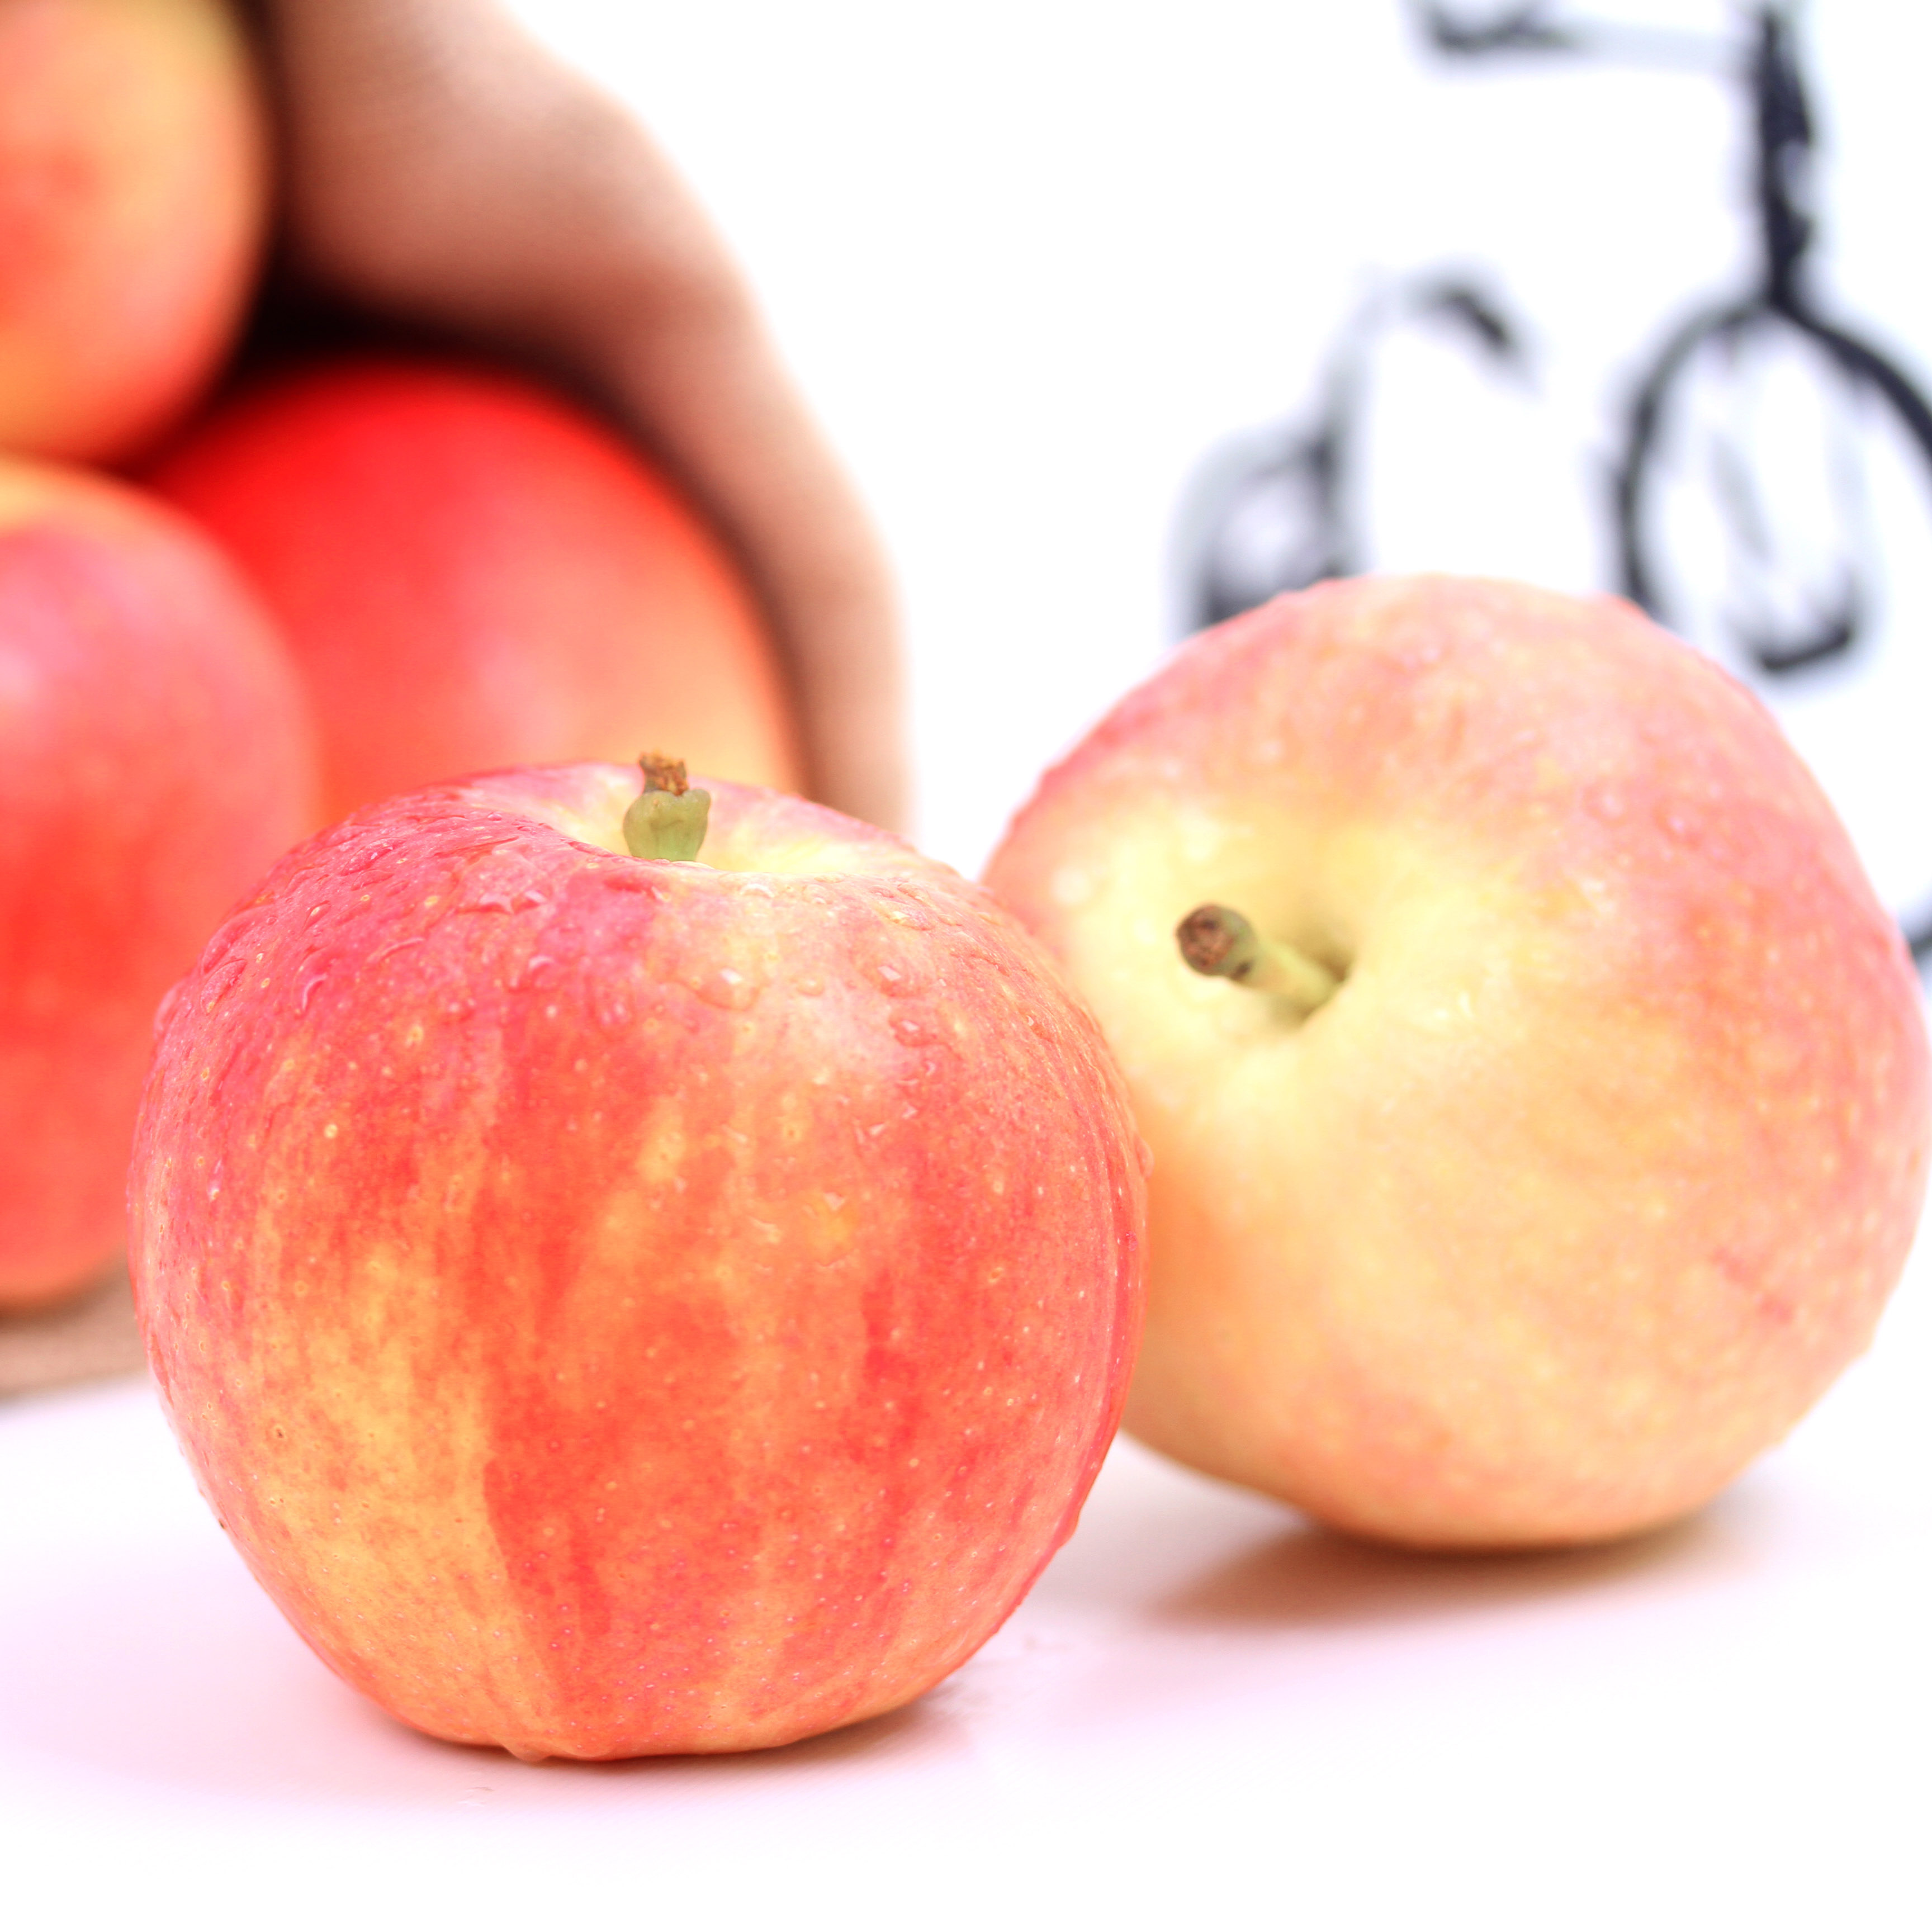 老三果园 现摘新鲜水果苹果大沙河红富士苹果5斤特价包邮折扣优惠信息